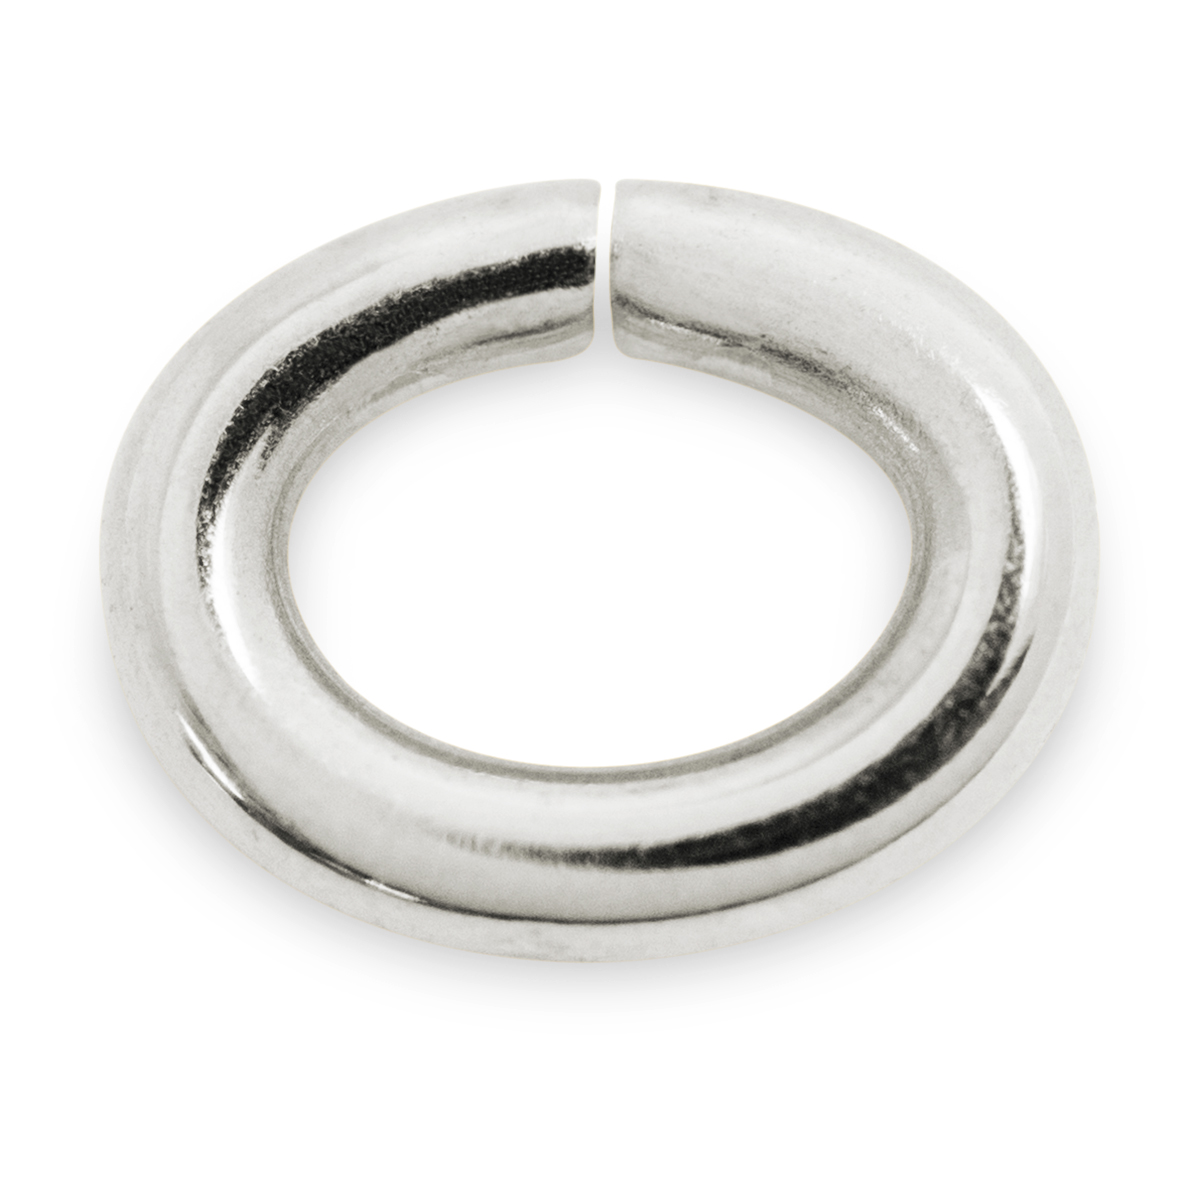 Binderinge, oval, 925/- Silber, Ø 7 mm, Stärke 1,1 mm